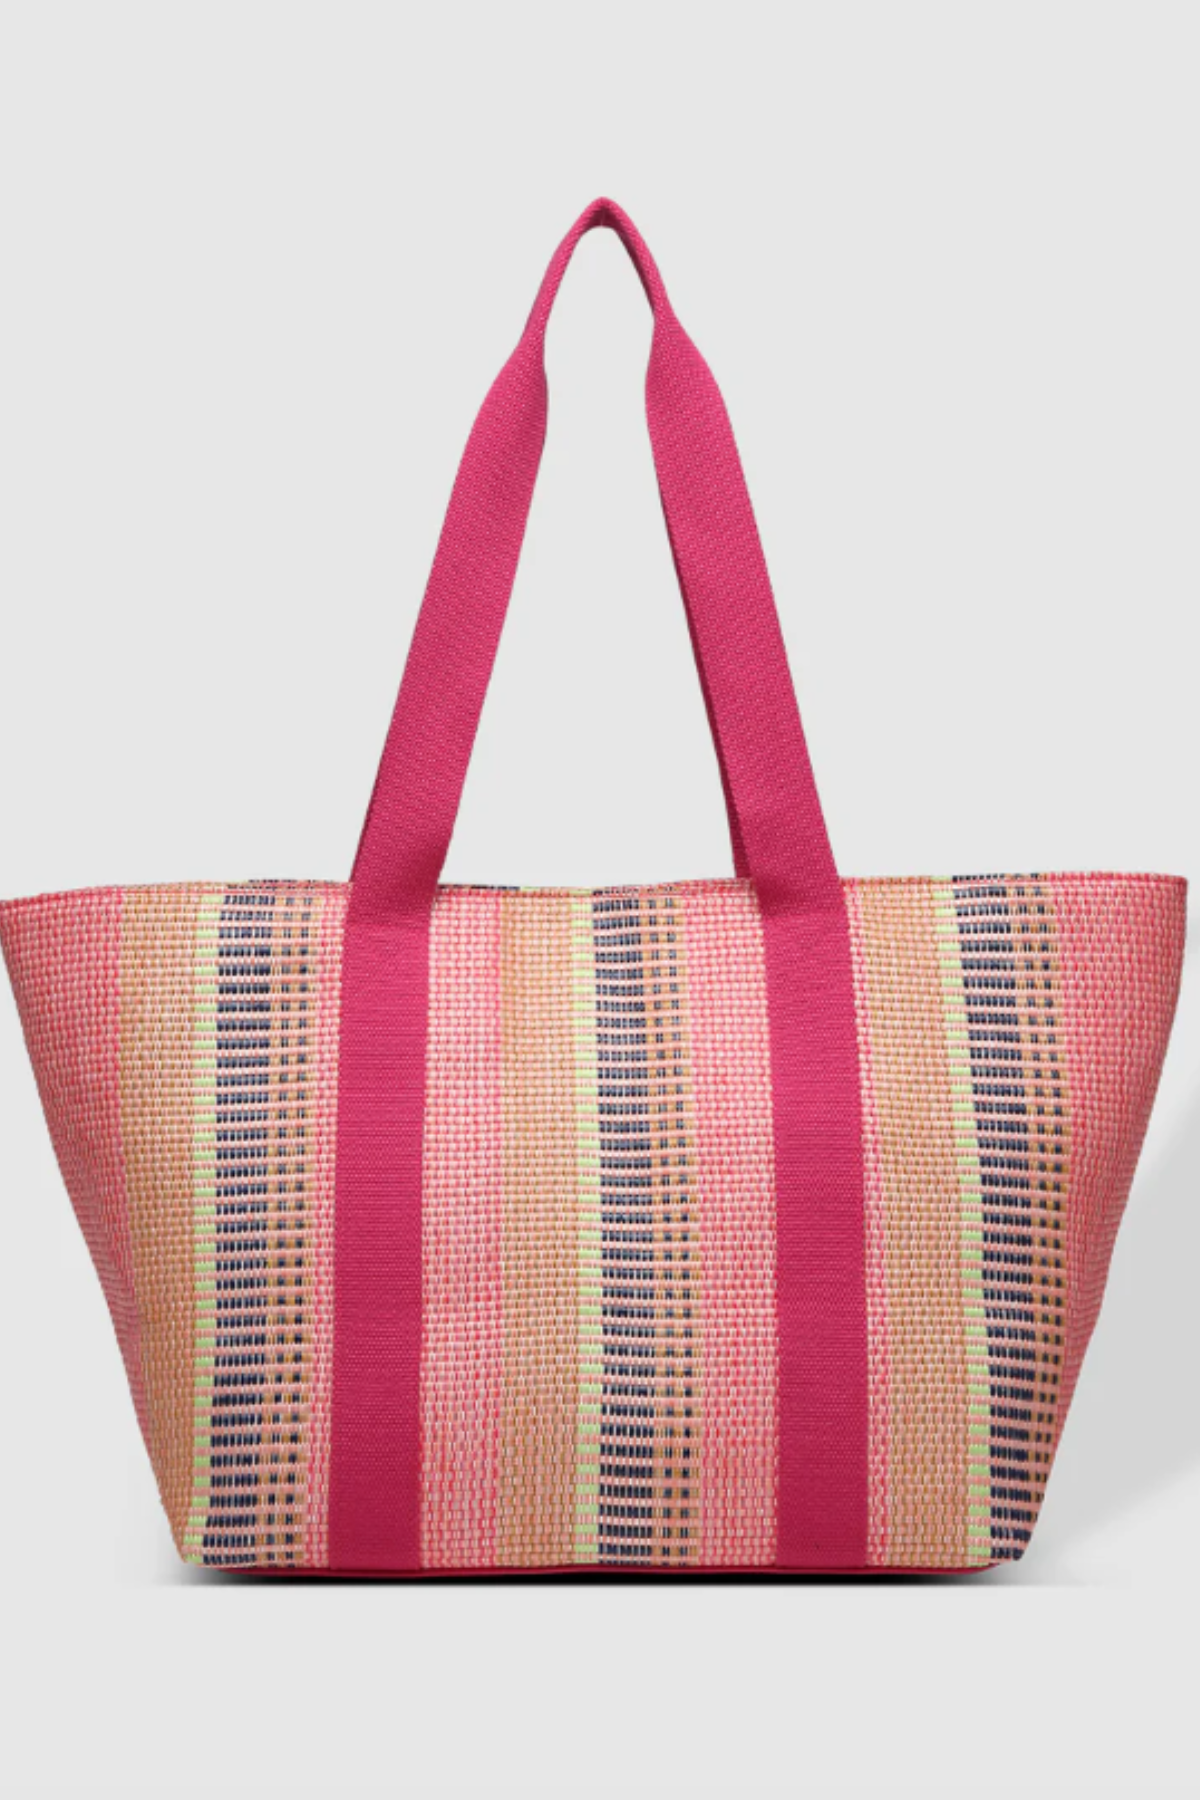 Bondi Tote Bag in Pink by Louenhide